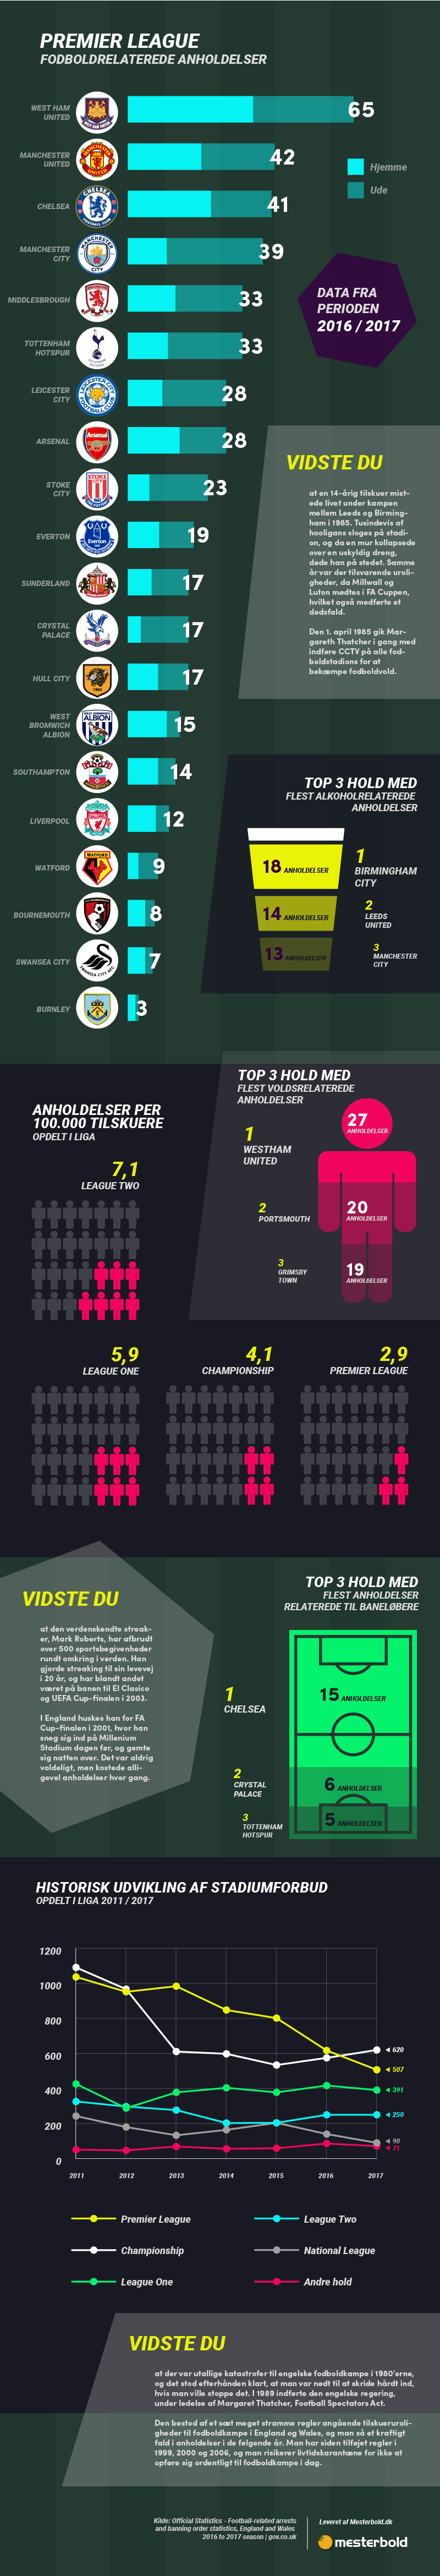 Statistik over hooligans og fodboldvold i Premier League (Infografik)